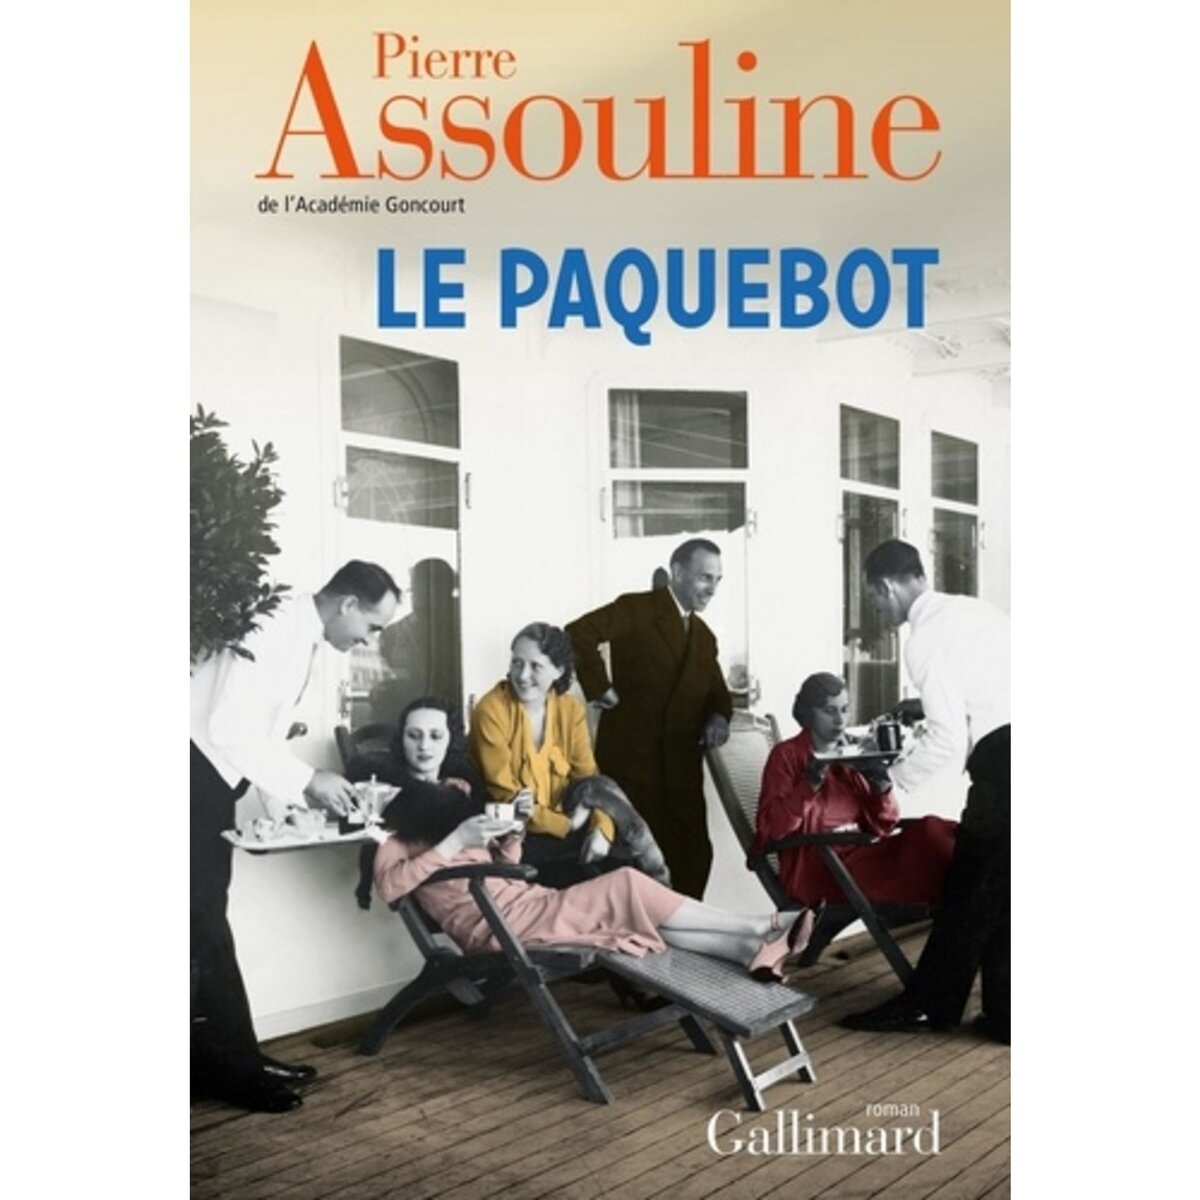  LE PAQUEBOT, Assouline Pierre